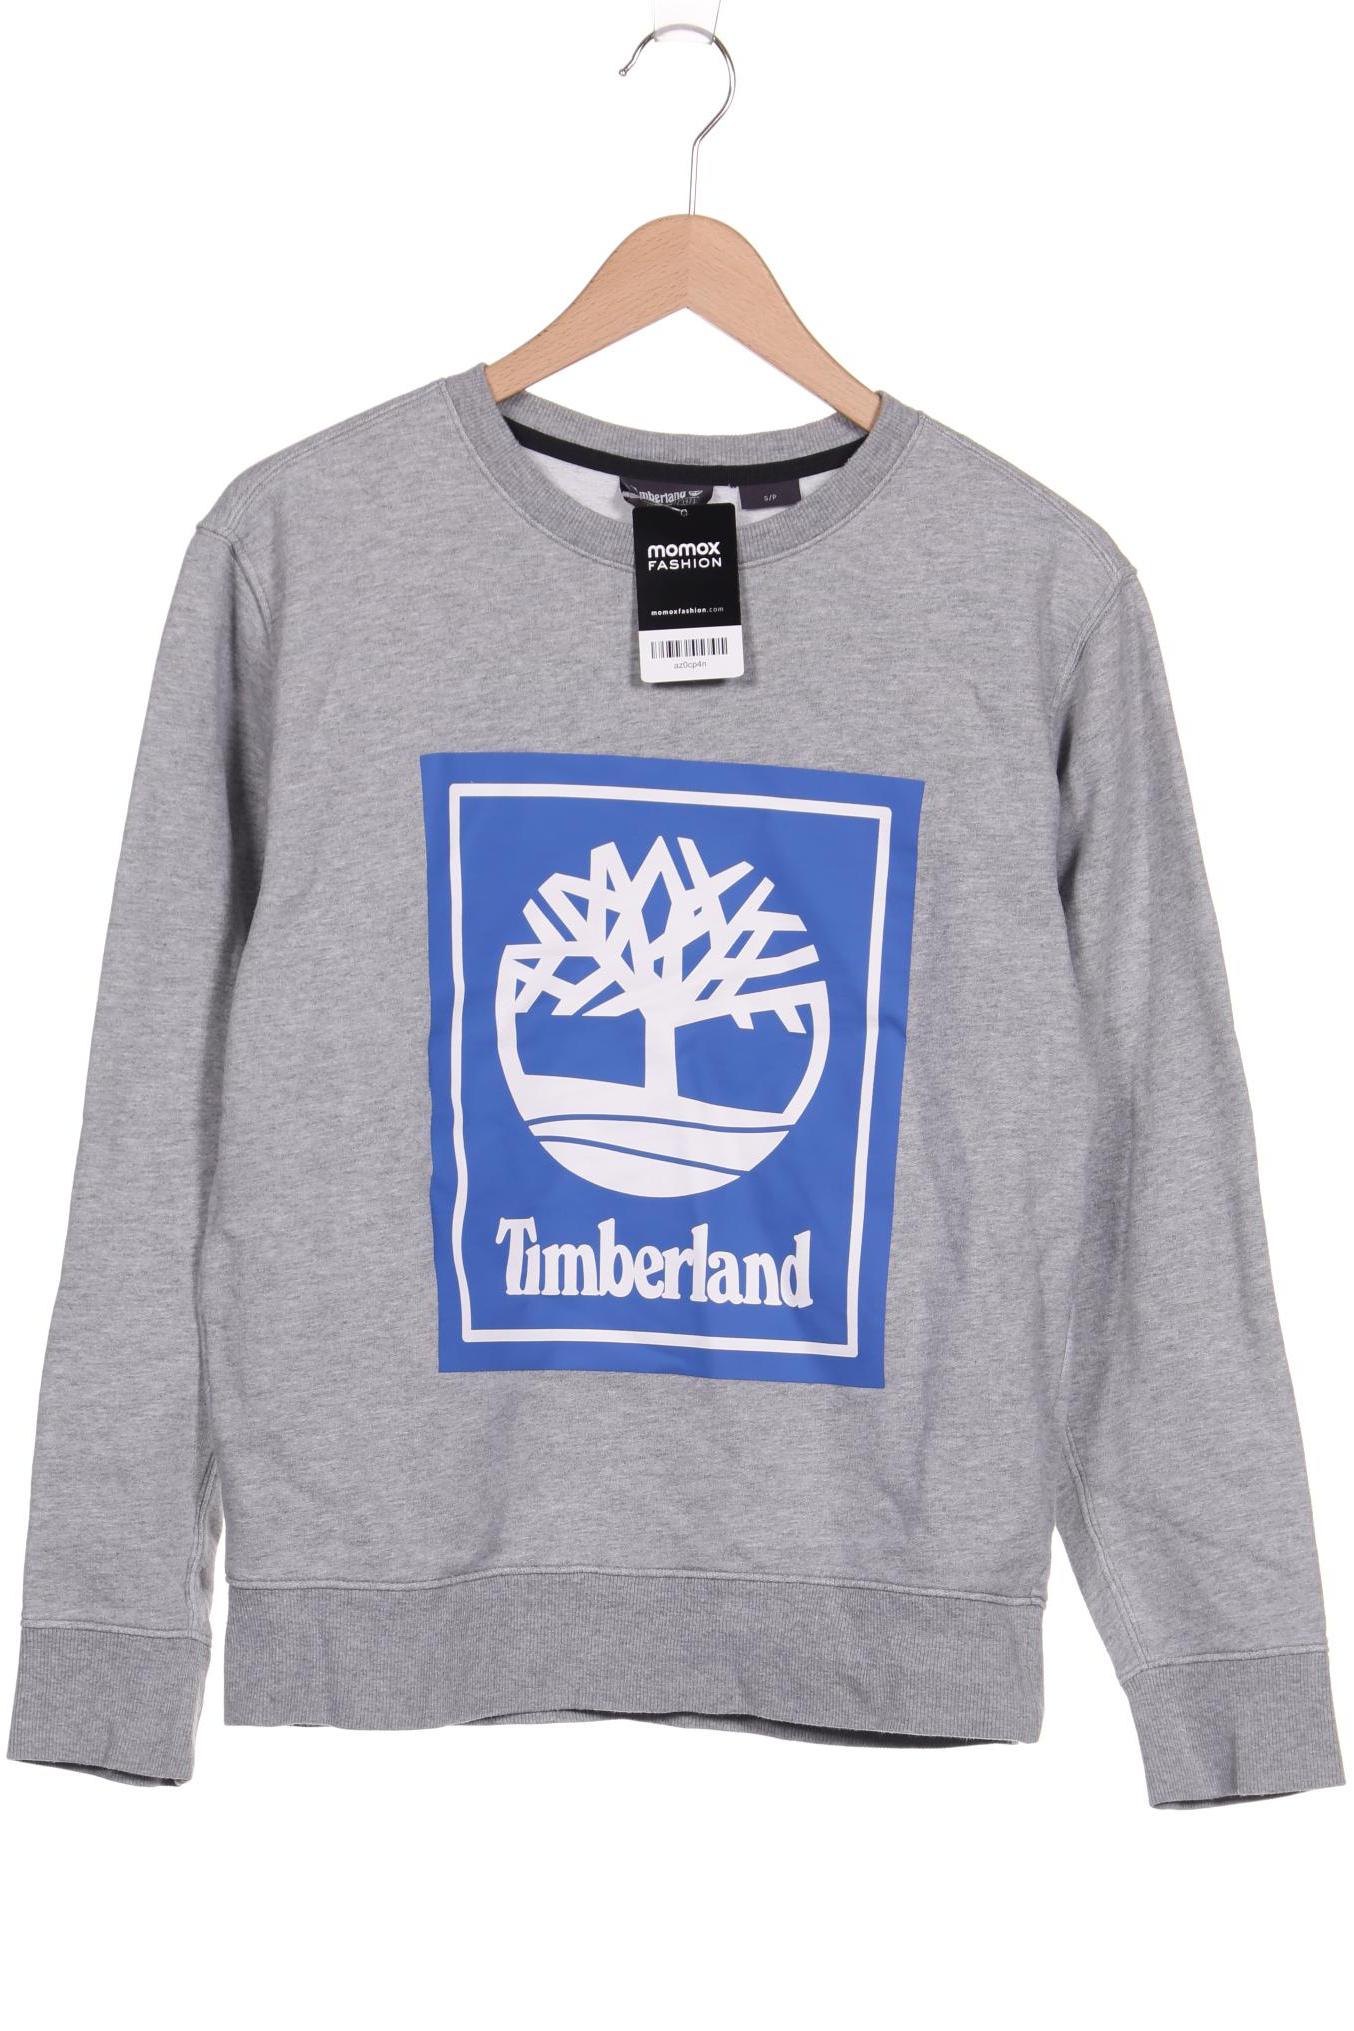 Timberland Herren Sweatshirt, grau von Timberland